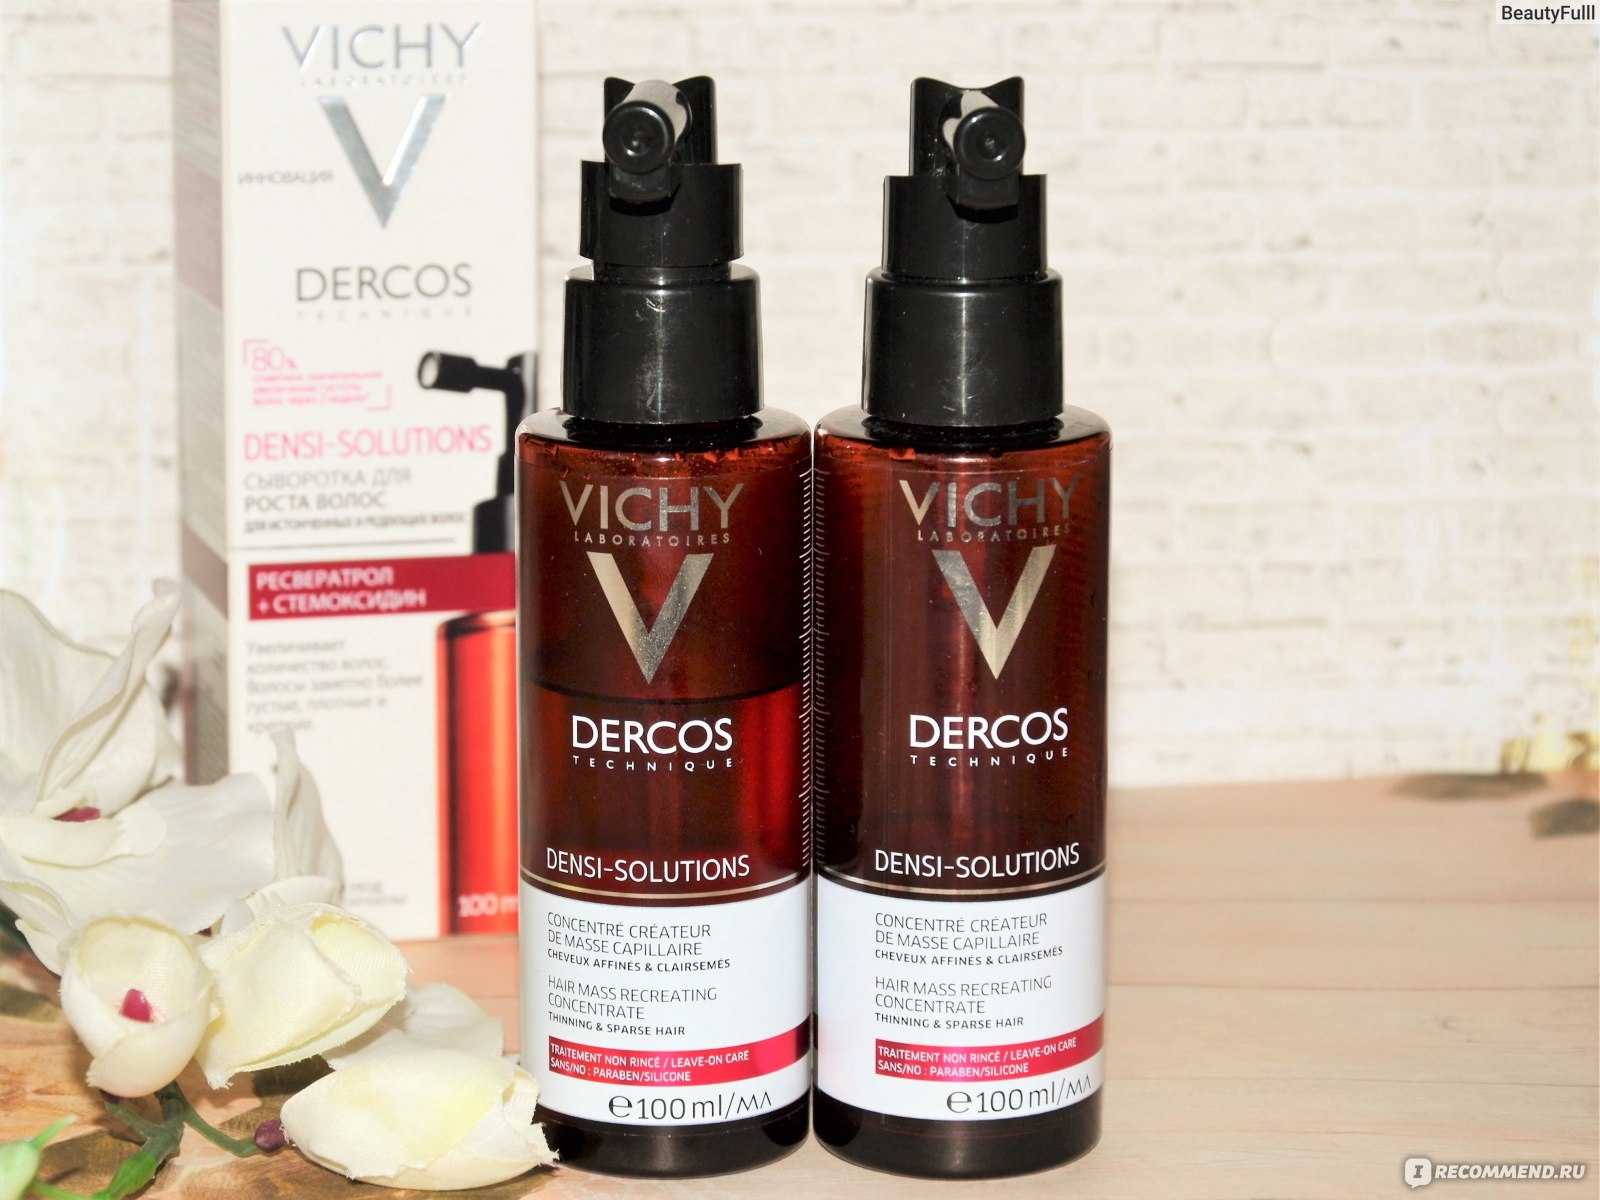 Vichy Dercos (Виши Деркос) для роста волос: обзор средств, инструкция по применению и состав, отзывы об использовании